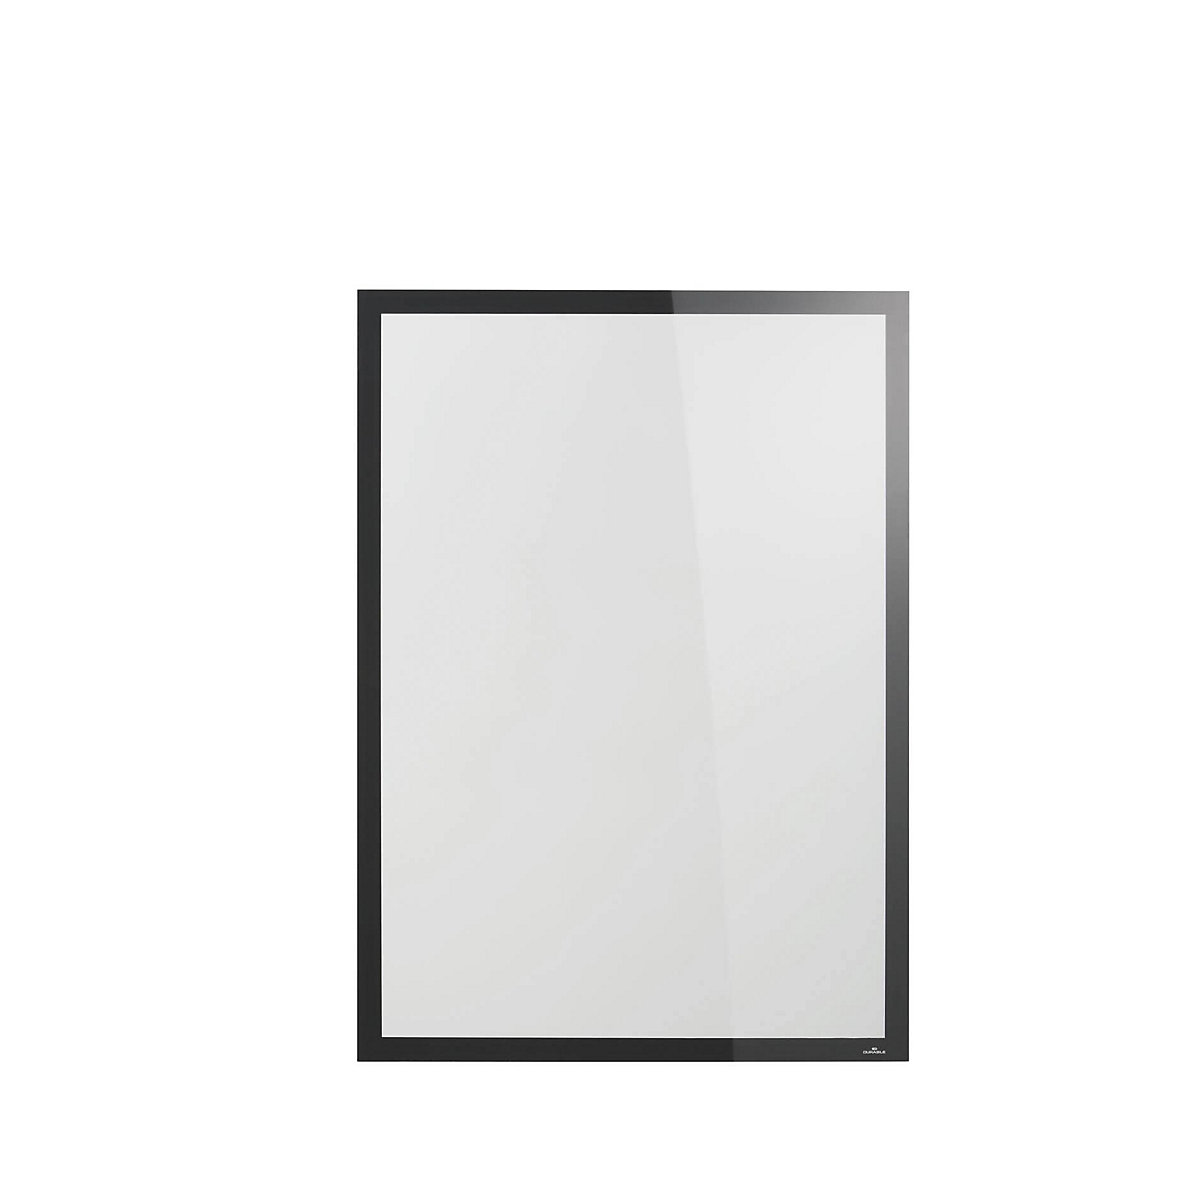 DURAFRAME® SUN foil frame, non-adhesive – DURABLE